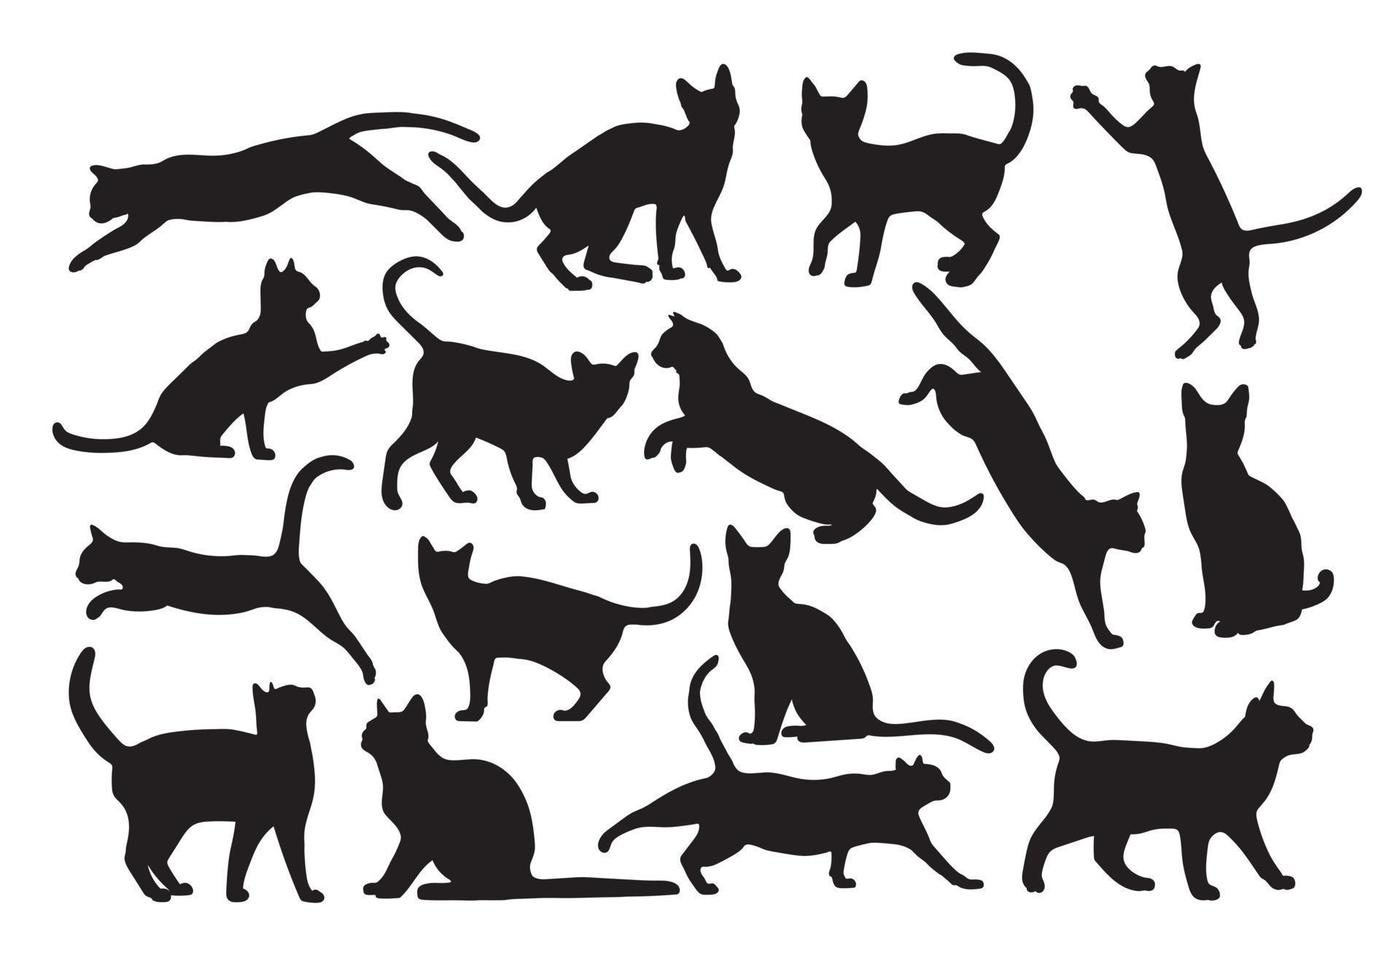 vrij vector hand- getrokken katten silhouet illustratie